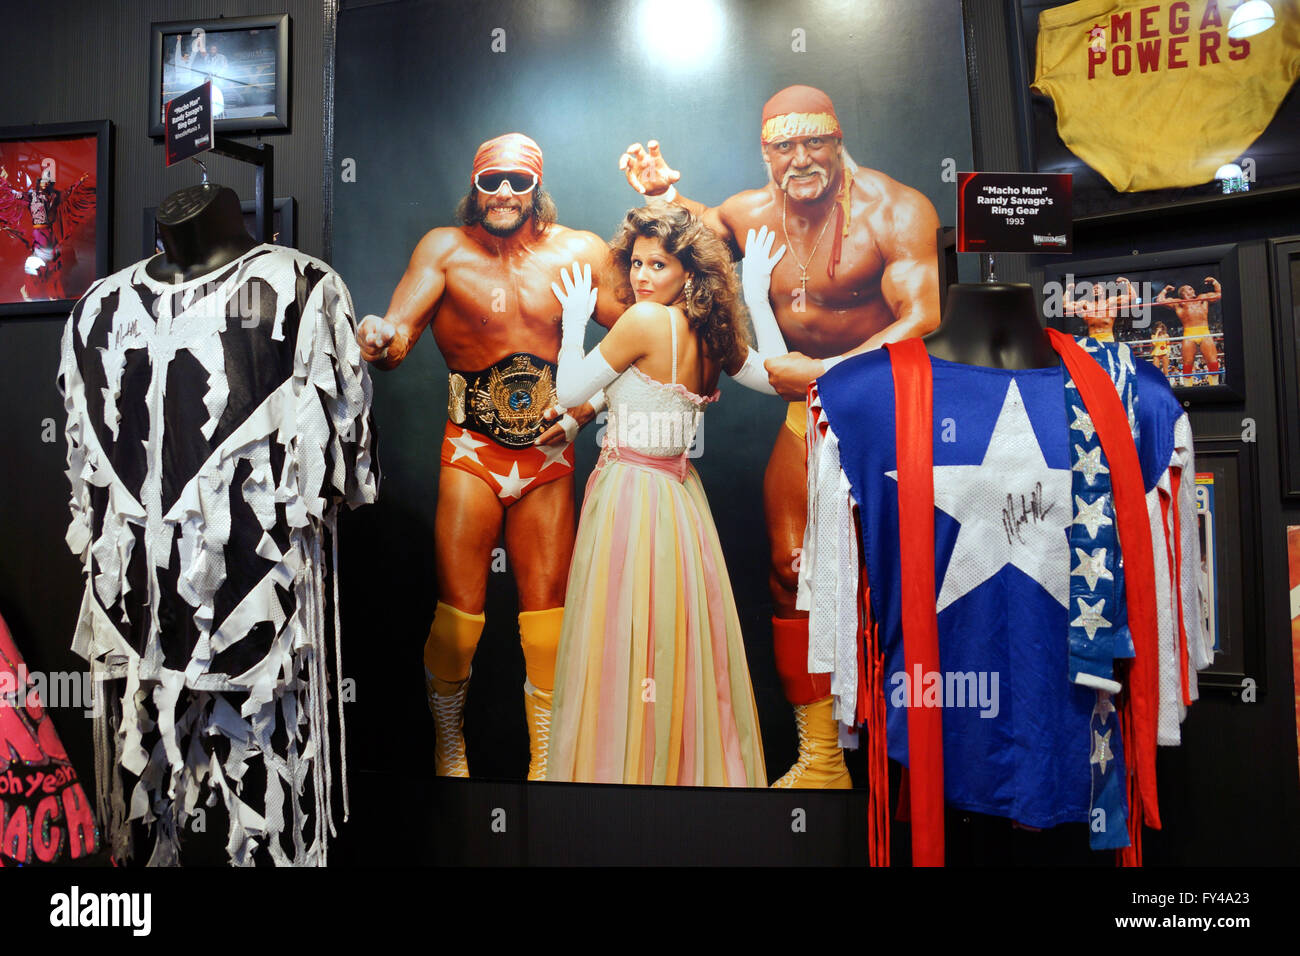 SAN JOSE - MARZO 28: WWE Legend uomo macho e Hulk Hogan Mega poteri  vestiti, cappelli, occhiali da sole e il poster della squadra con il  manager Miss Elizabeth su schermi a